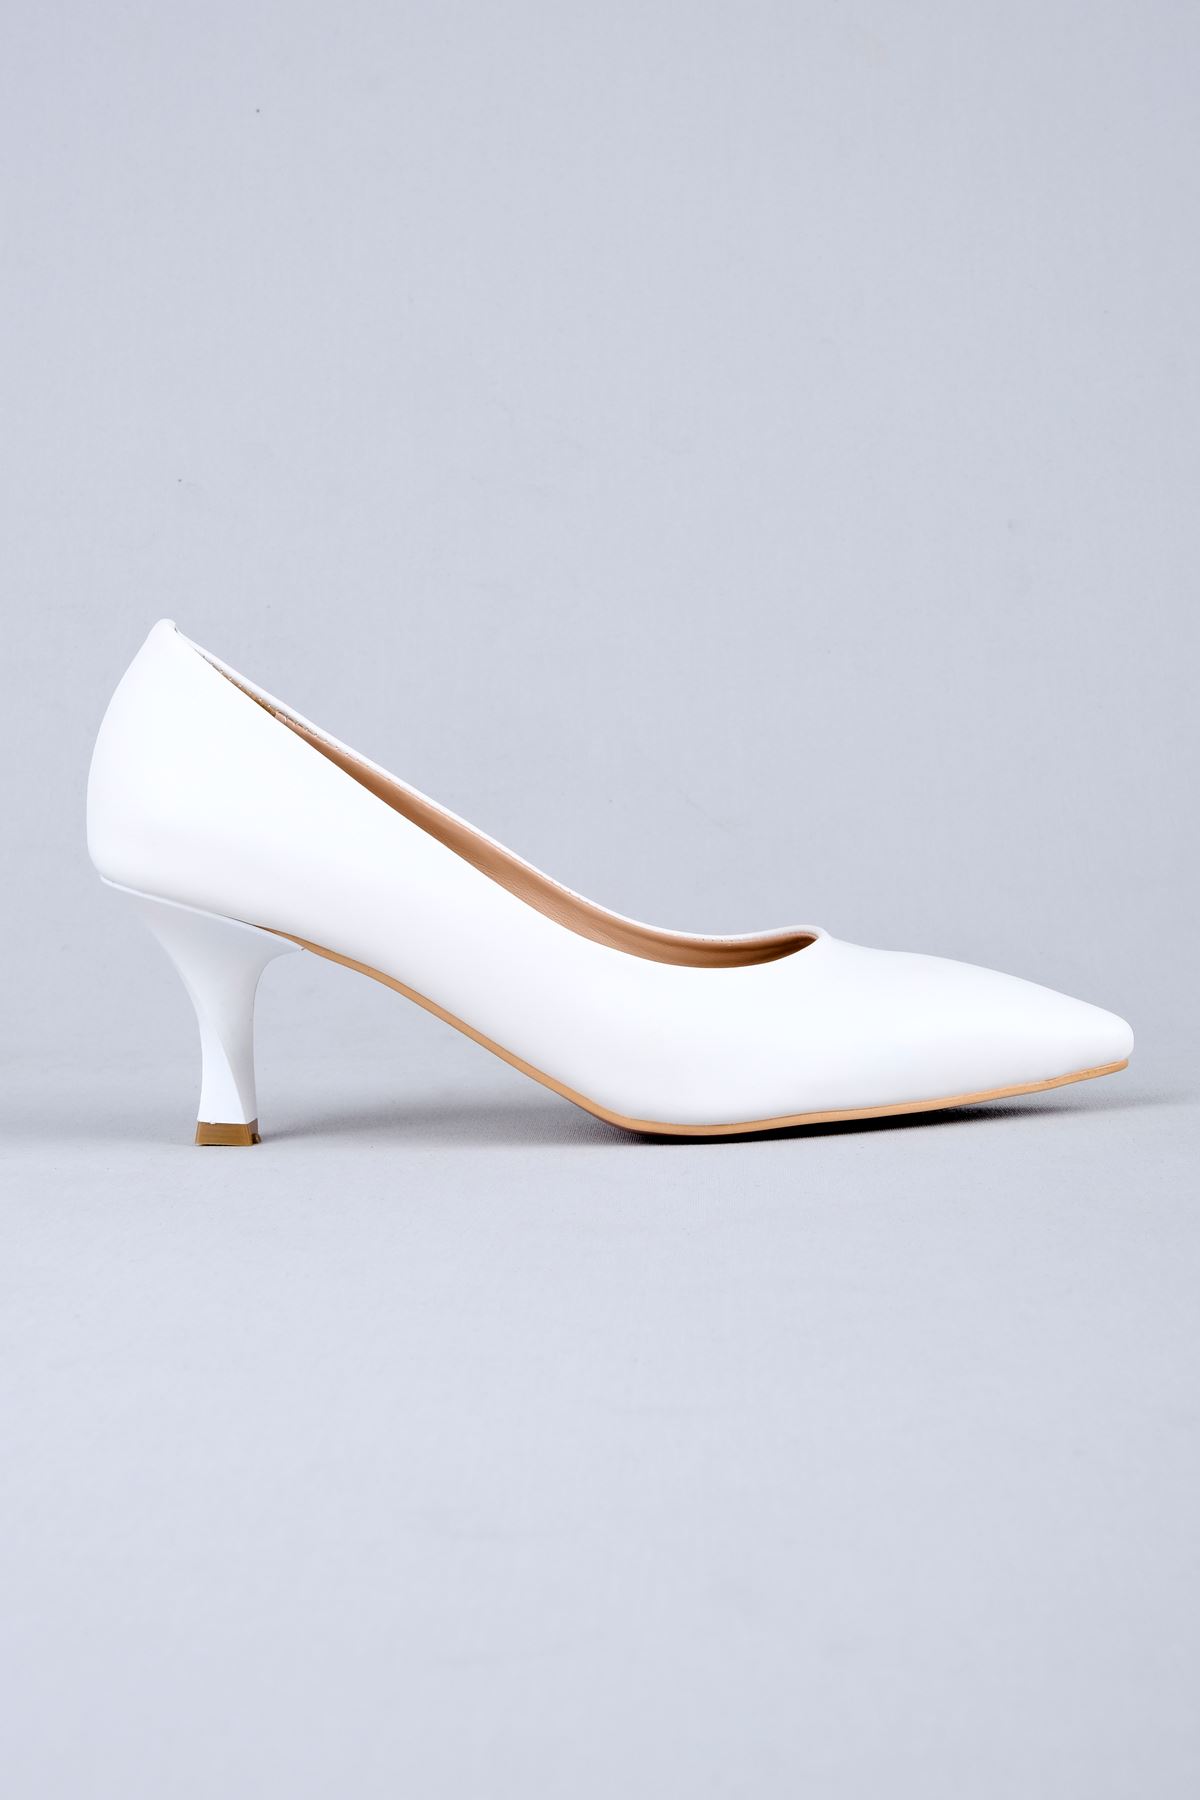 Norma Kadın Topuklu Ayakkabı-beyaz